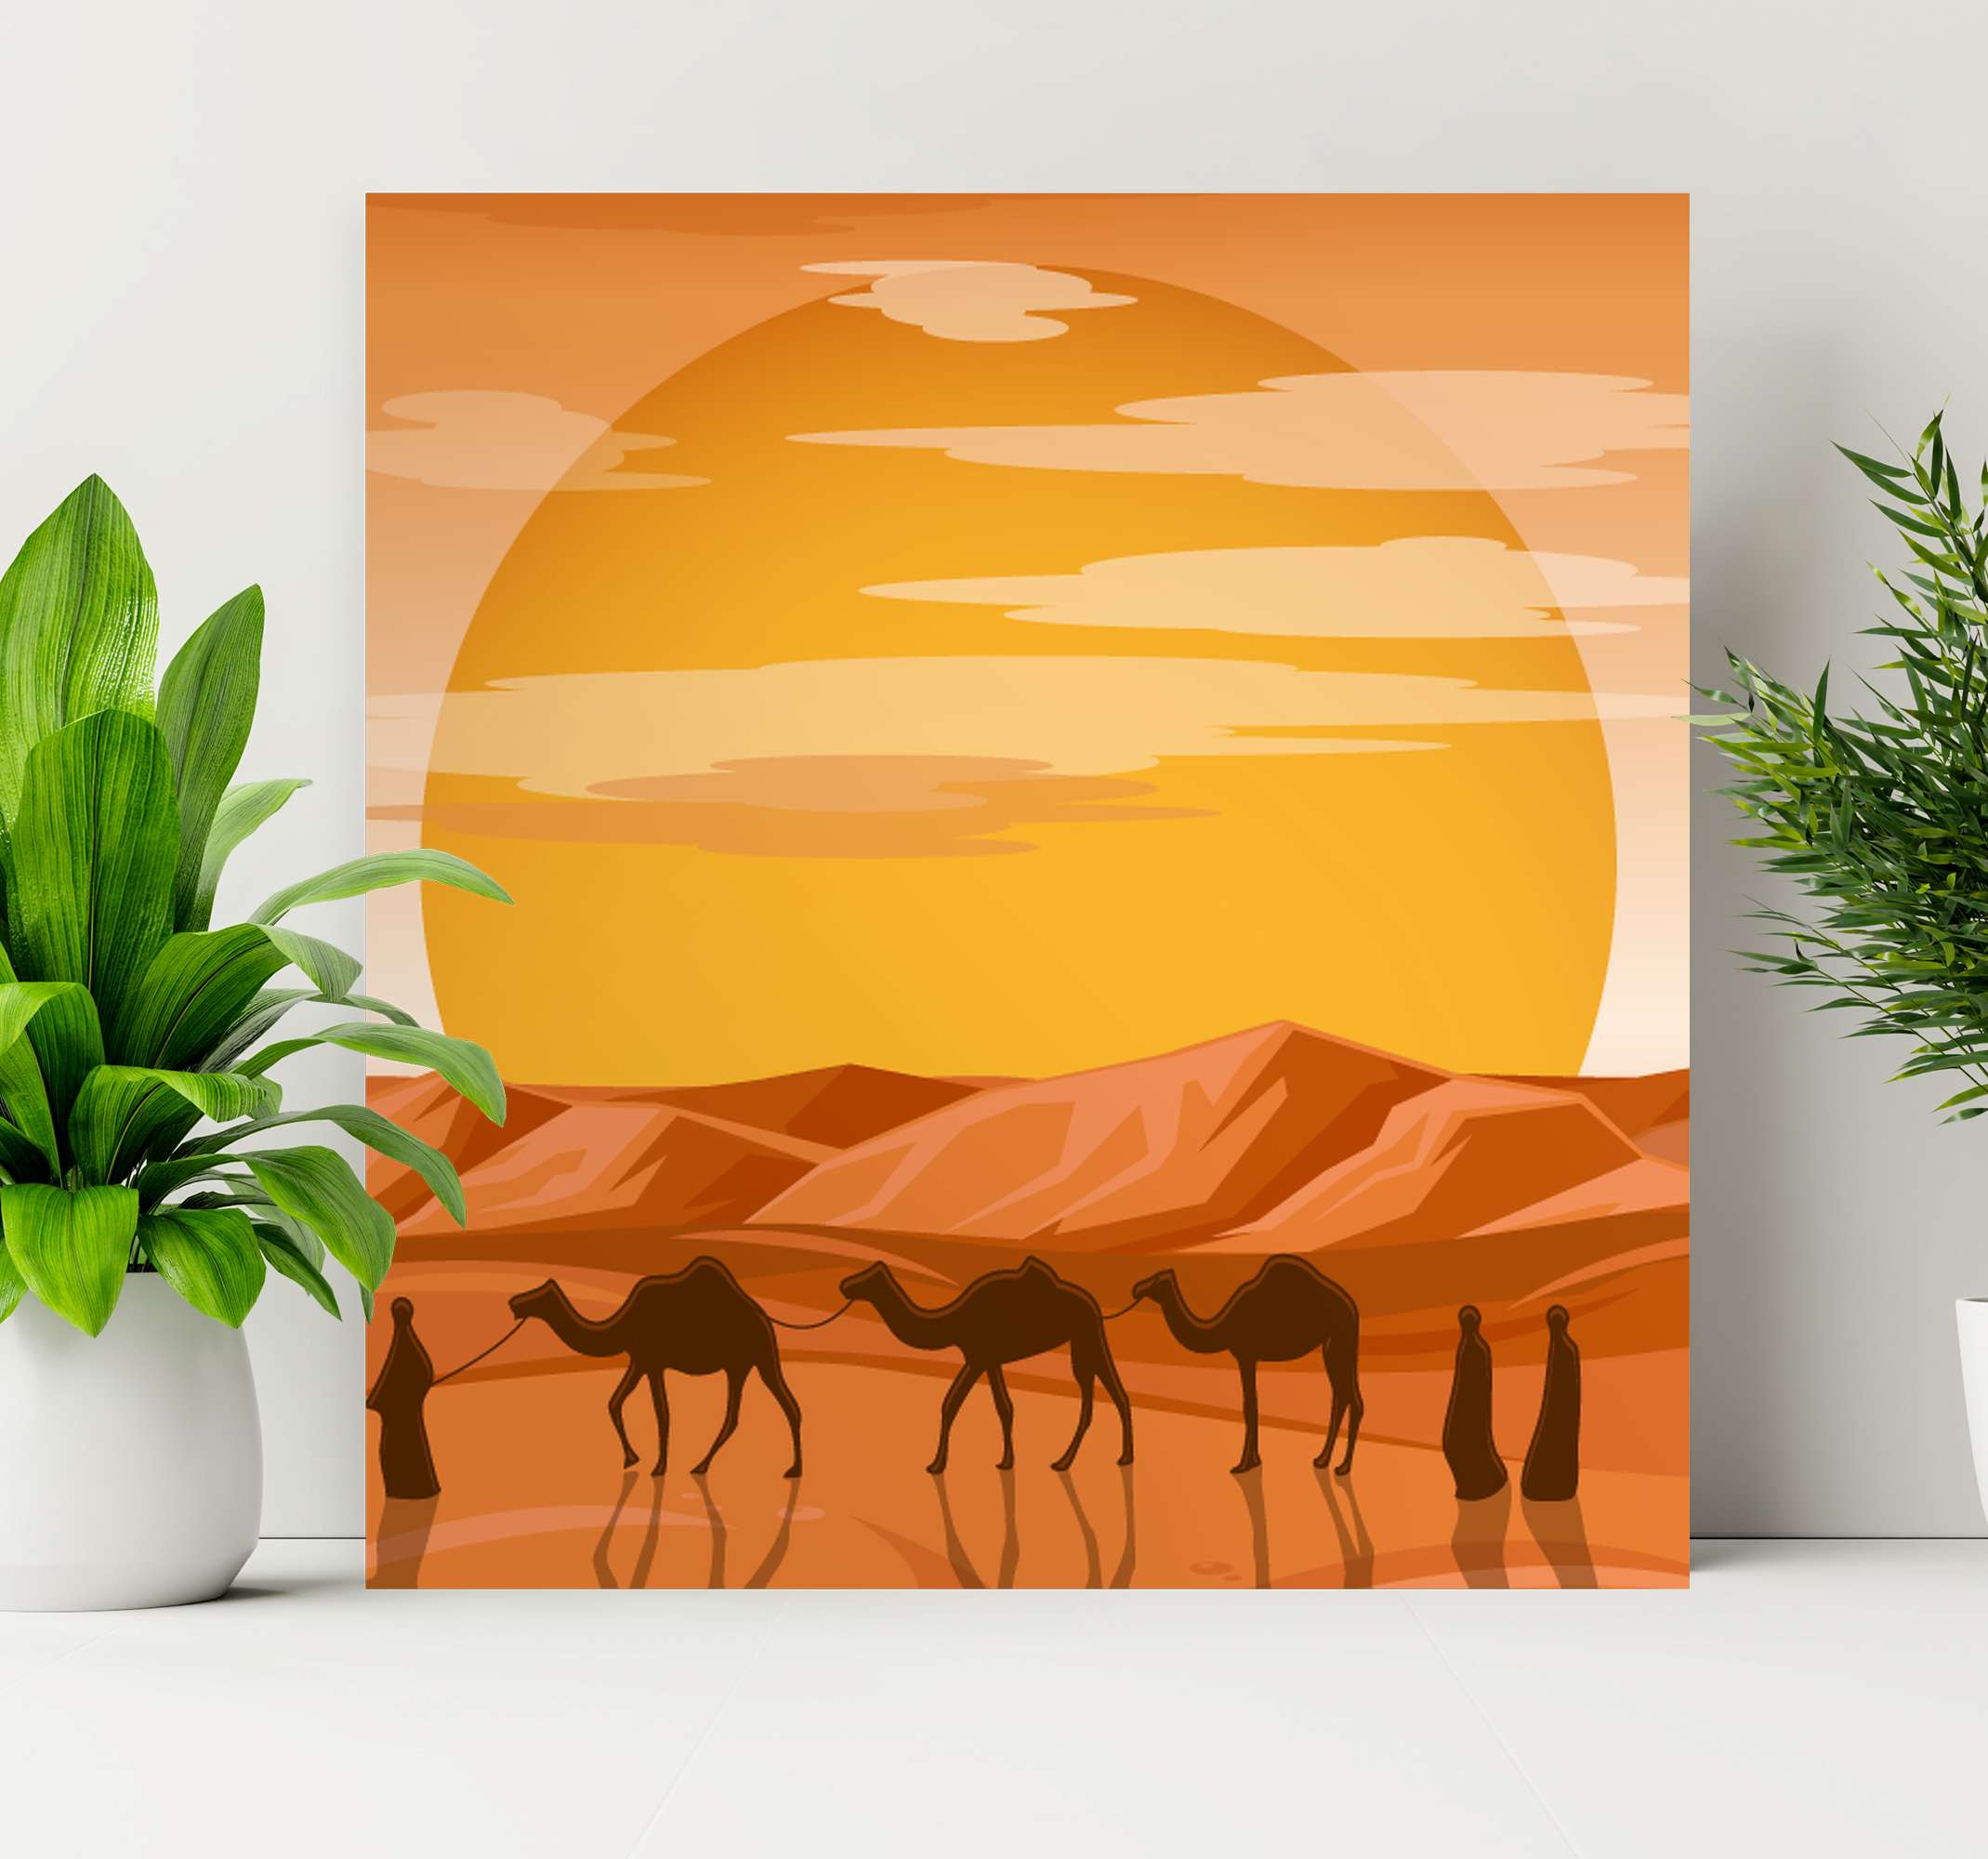 Galería de cuadros con marco blanco y roble - Desierto DÉCORATION